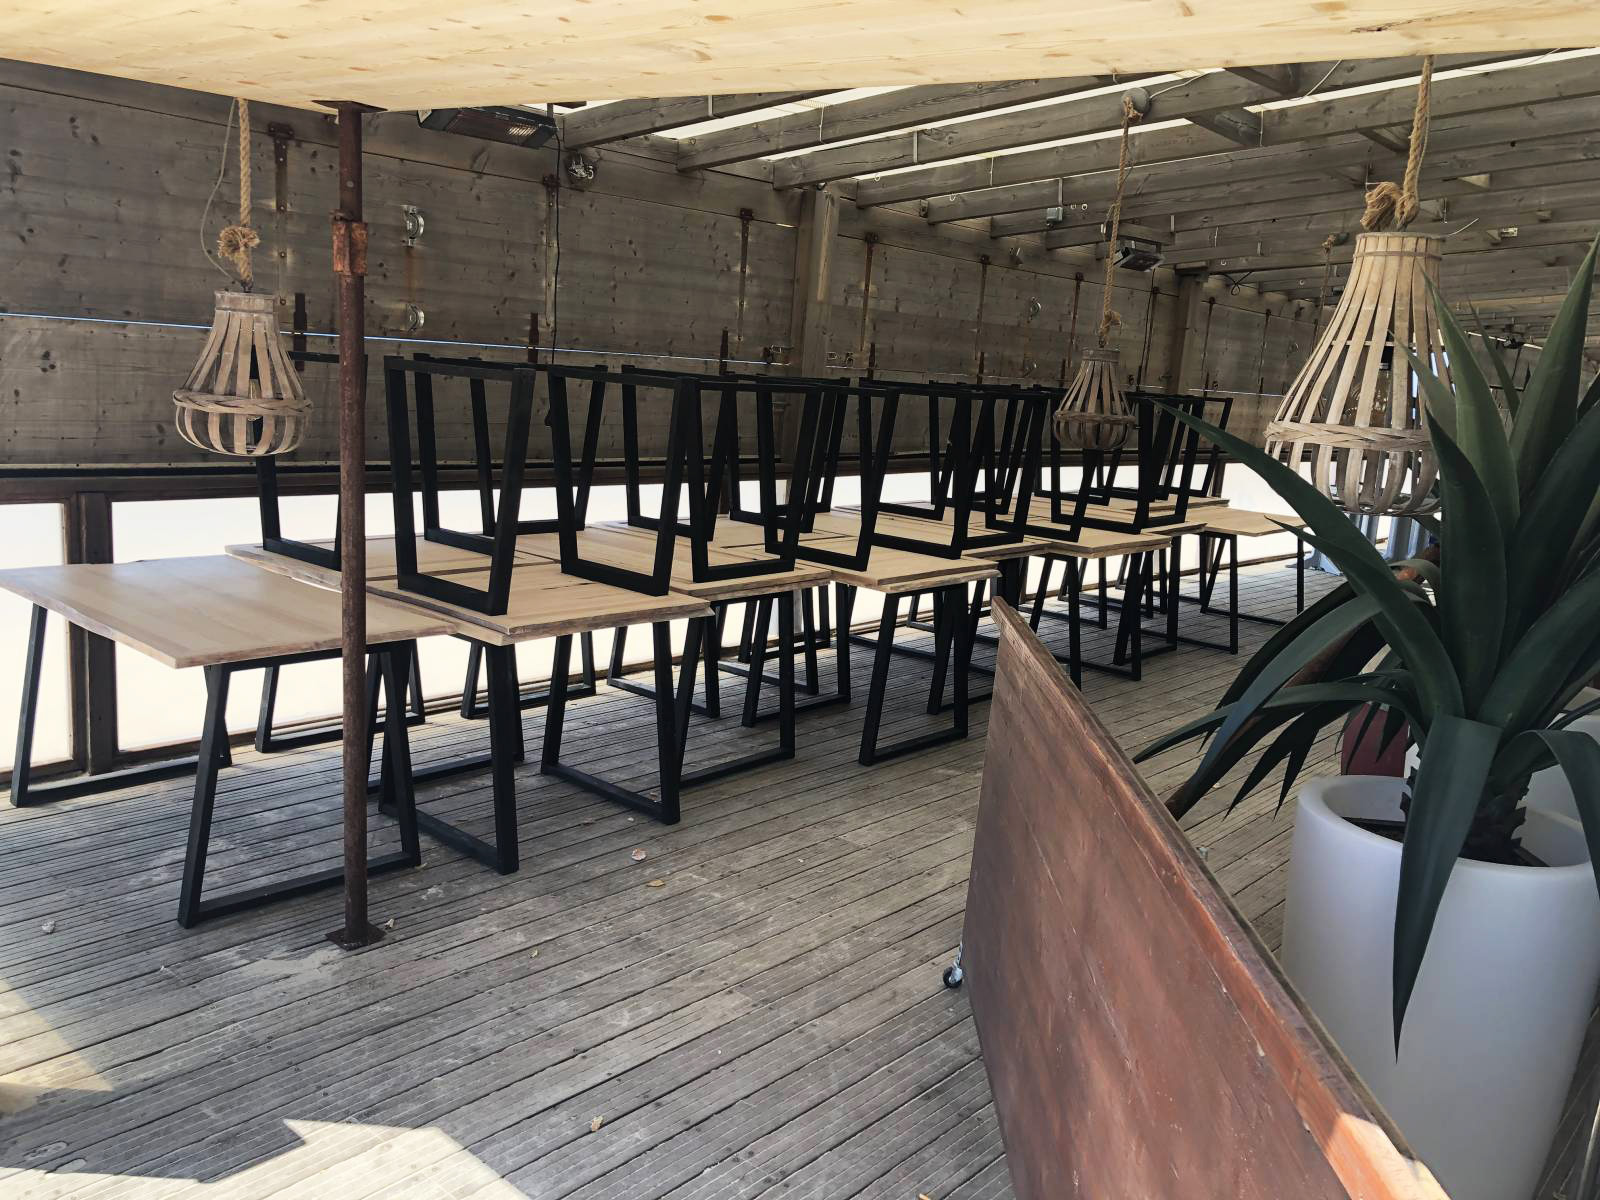 Lire la suite à propos de l’article Fabrication de tables en bois sur mesure pour un restaurant à Biscarrosse Landes